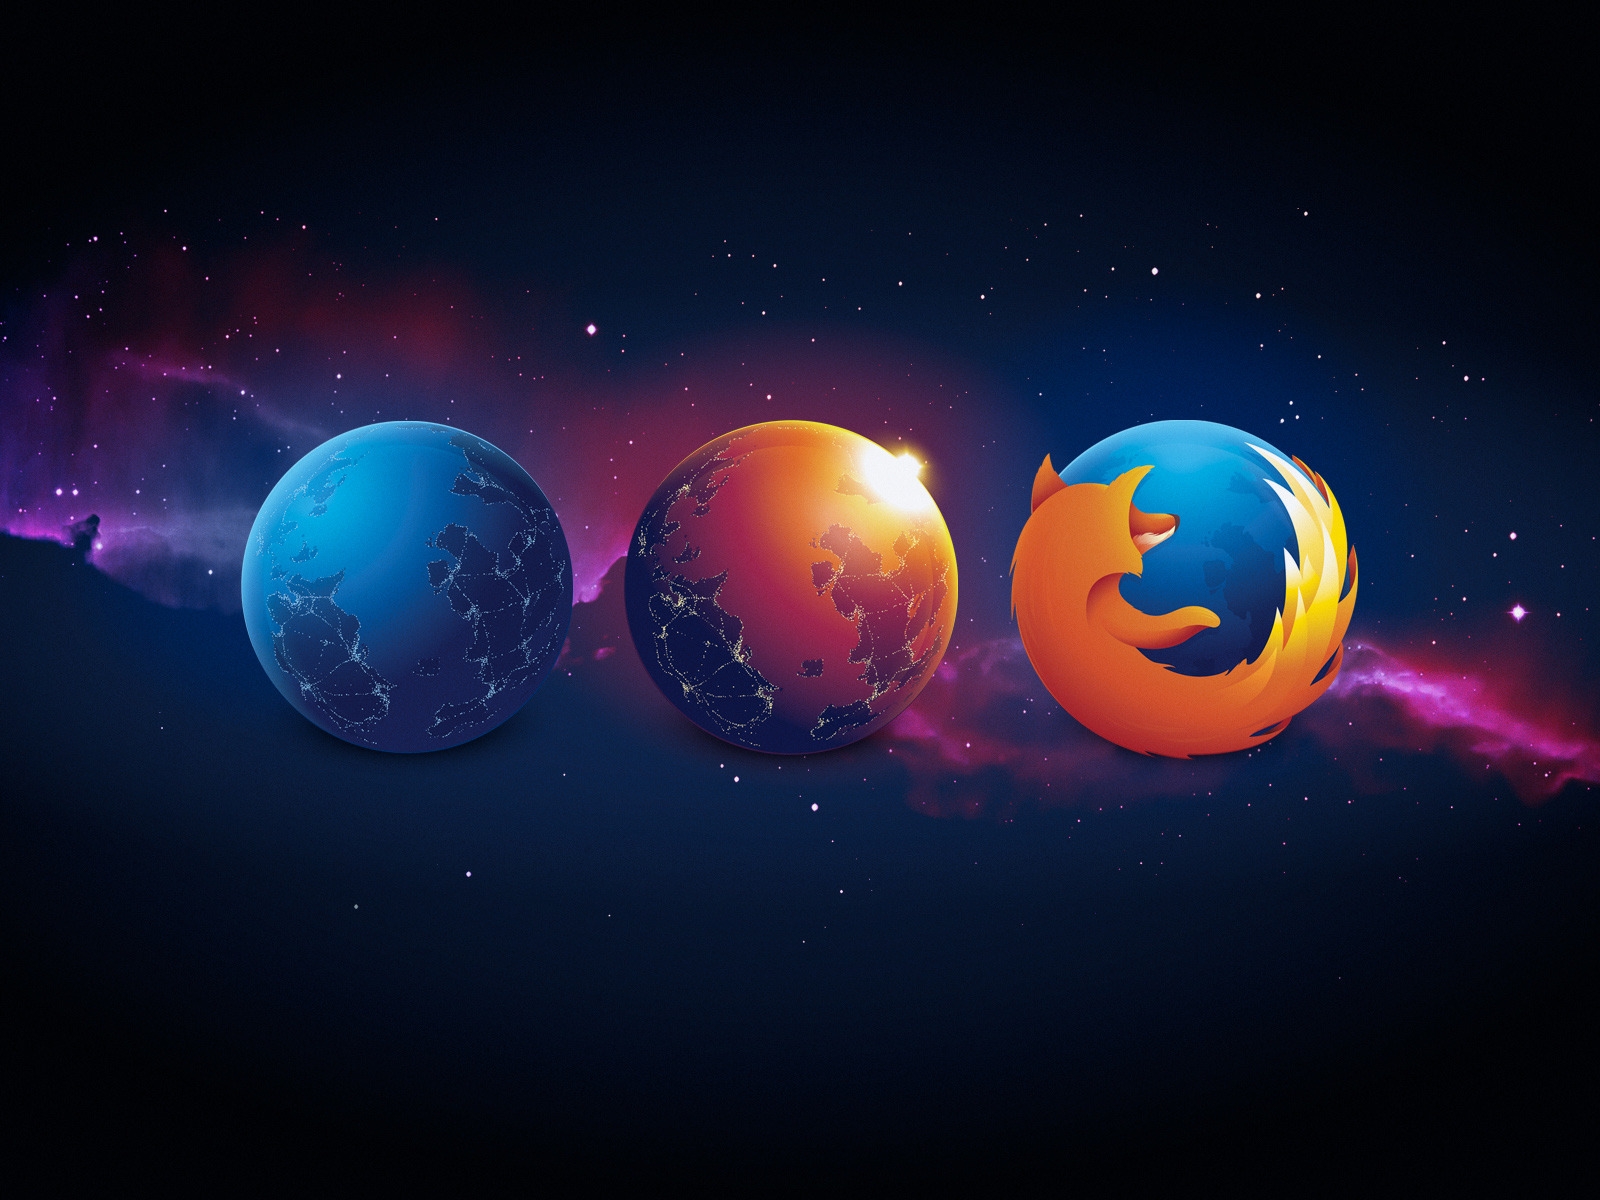 Firefox Nightly Aurora for 1600 x 1200 resolution